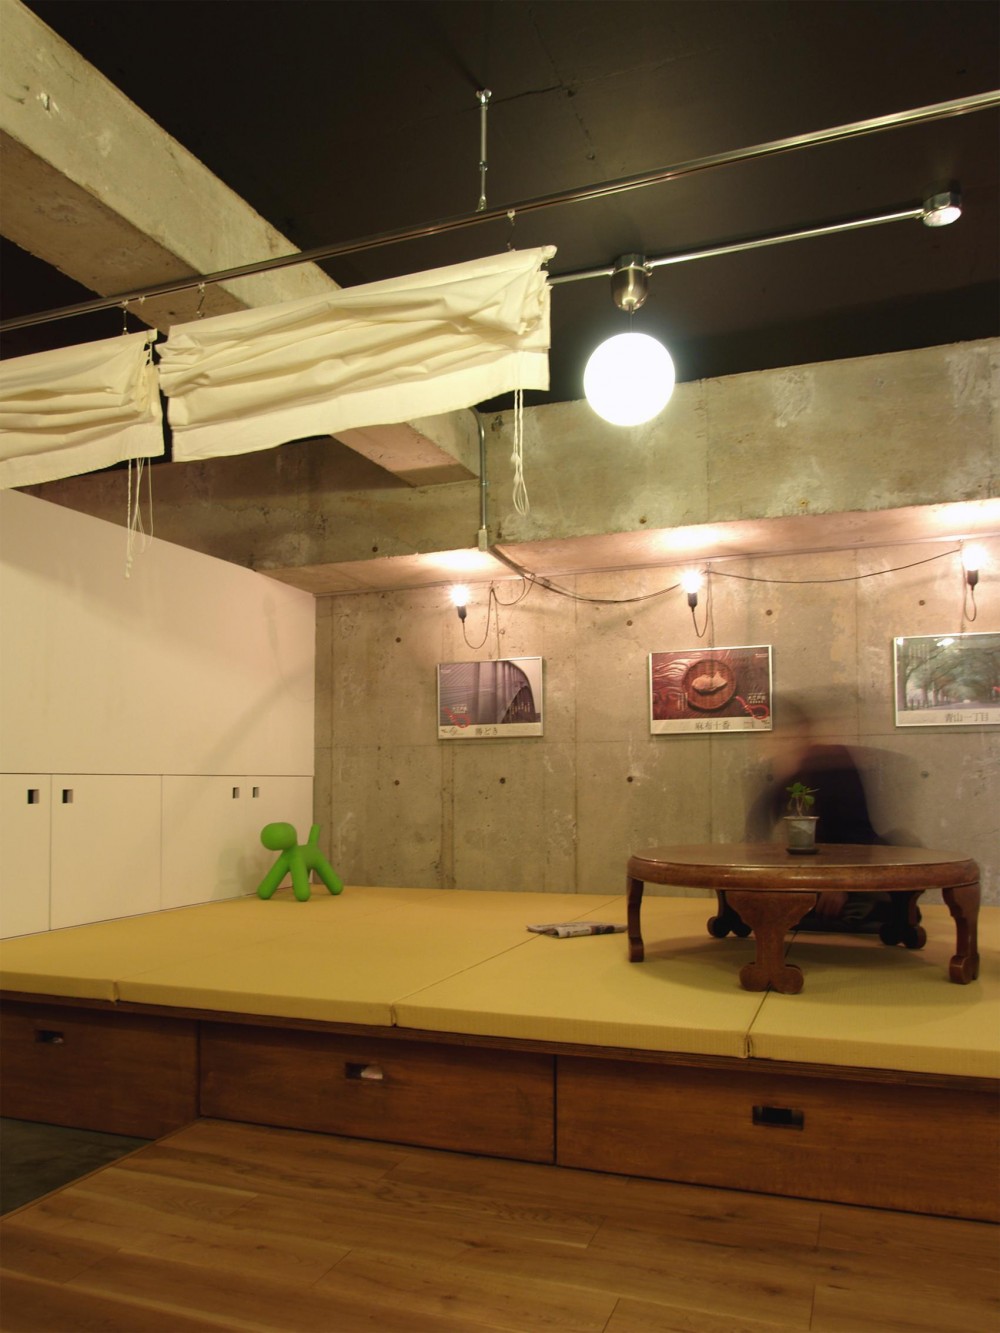 ブルースタジオ「RIKUBUNー畳を生活の中心にしたリノベーション」